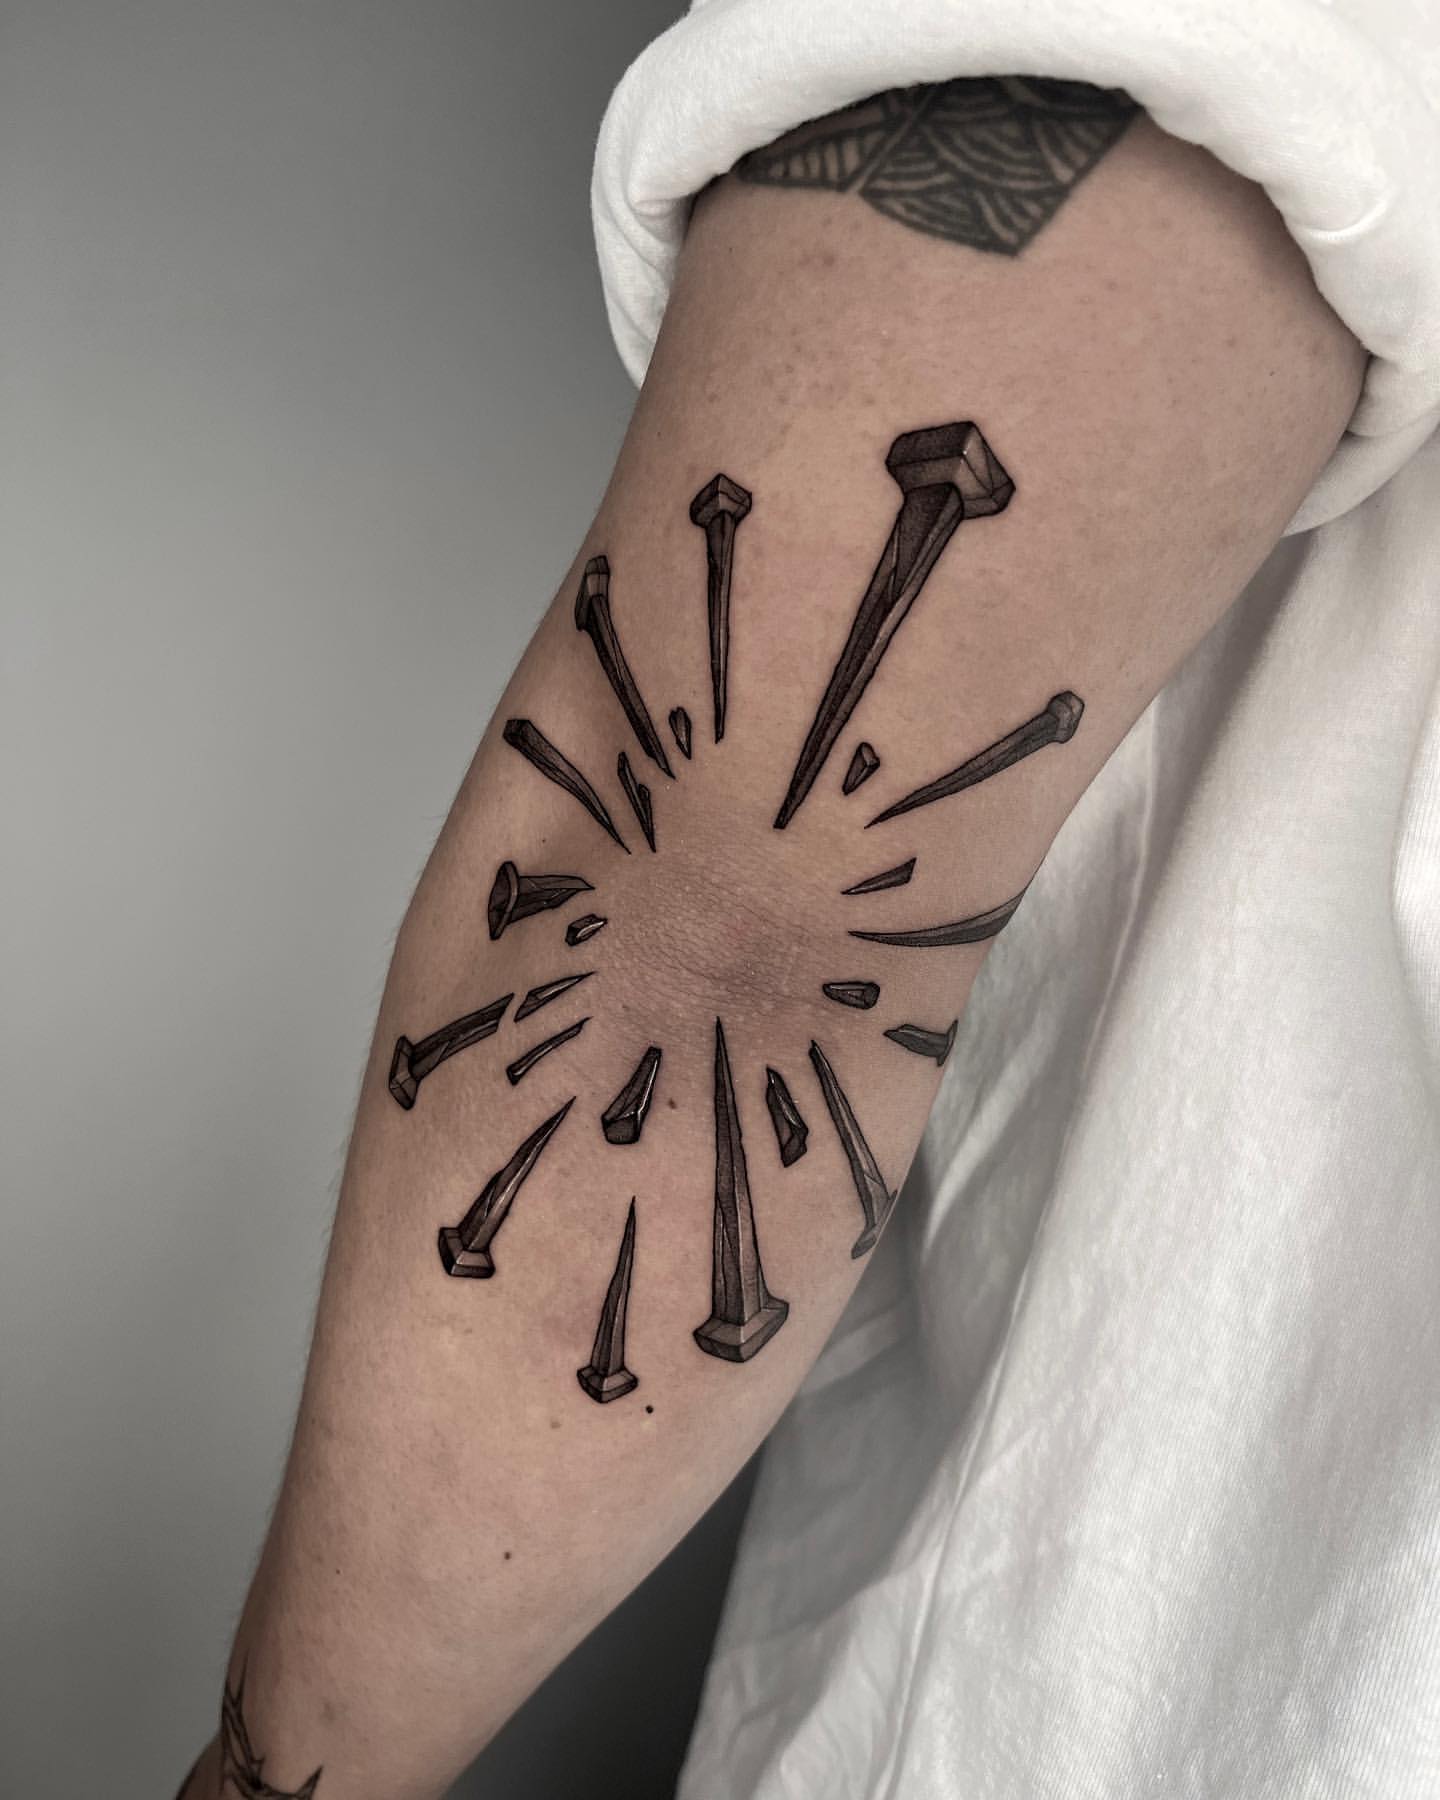 Blackwork elbow by Nathan Woelke, Golden Rule, Phoenix : r/tattoos